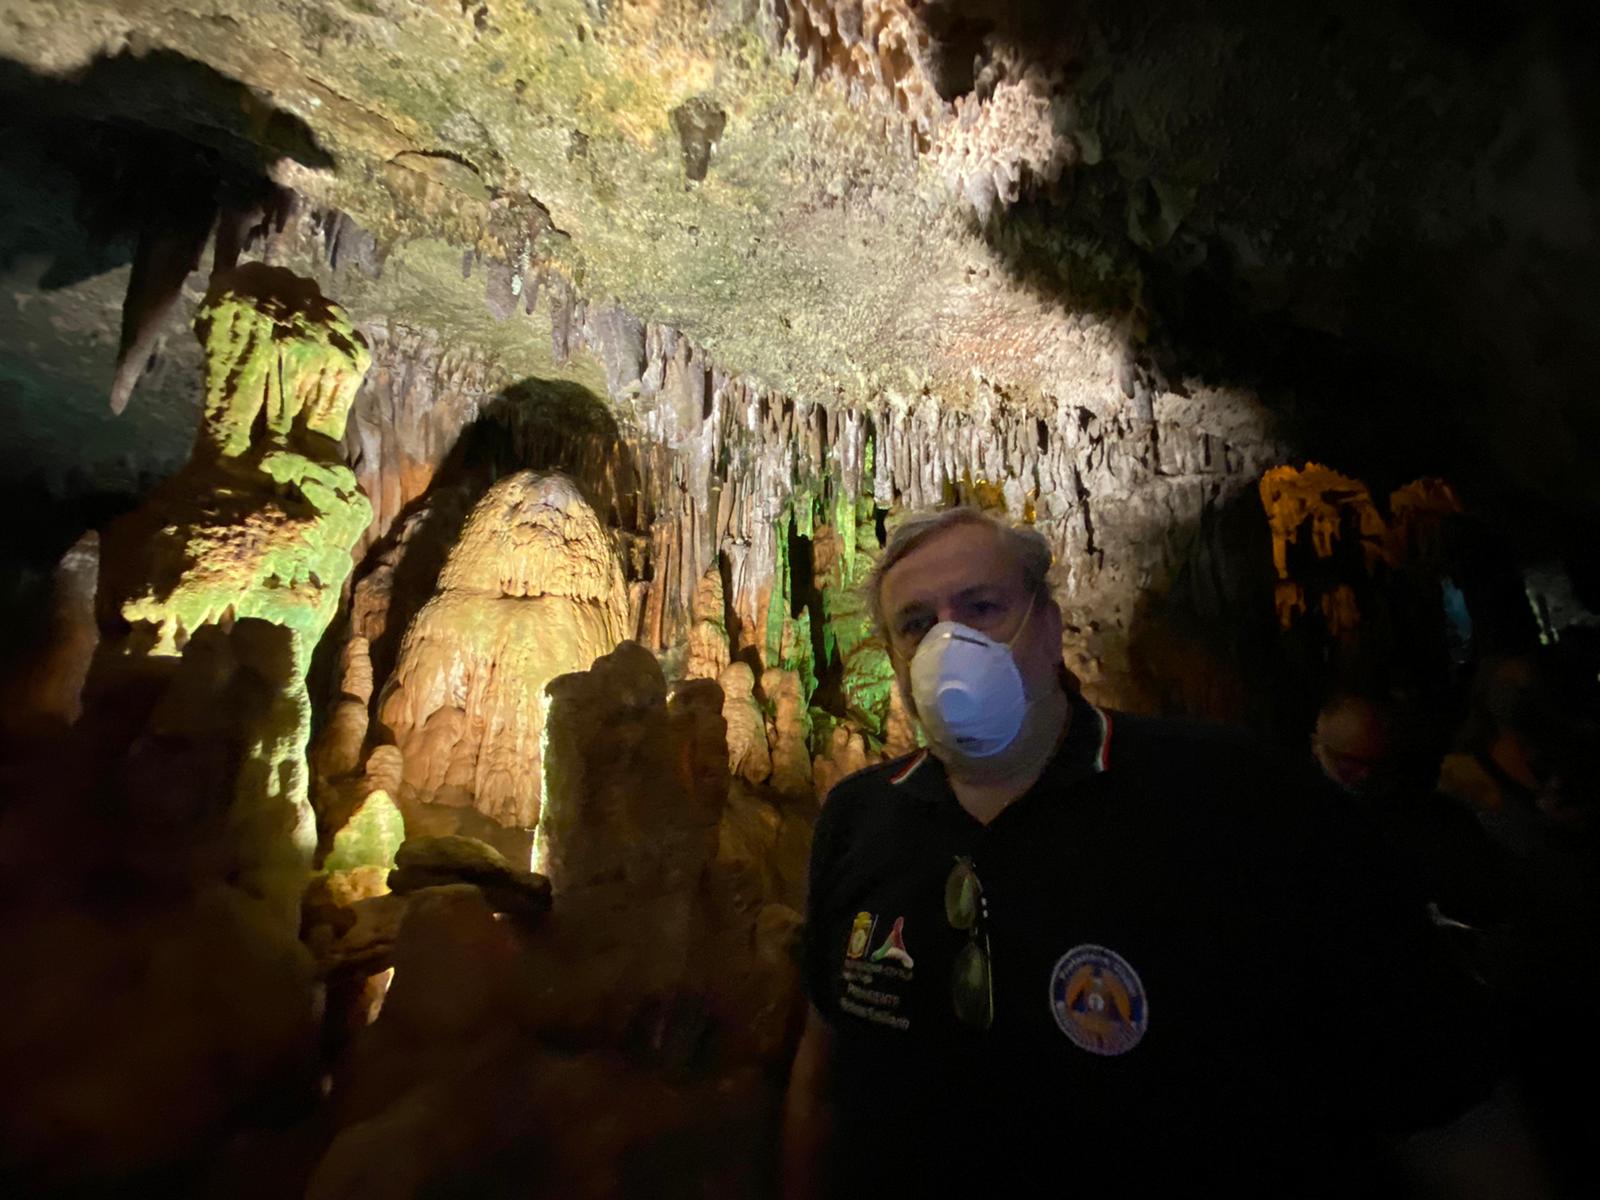 Galleria Emiliano alla riapertura delle Grotte di Castellana: “venite a visitarle, sono uniche al mondo” - Diapositiva 9 di 13